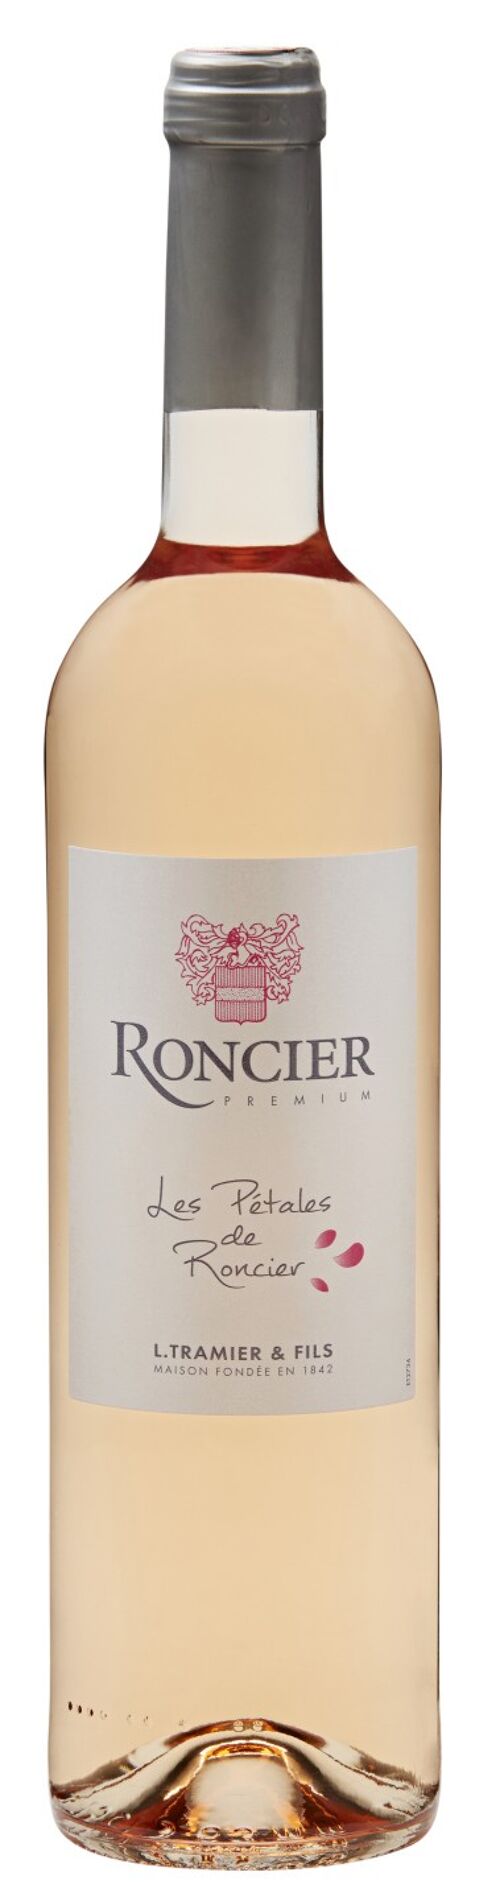 Roncier Premium Rosé 'Les Pétales de Roncier' - Saint Valentin - Vin Rosé (VDF Bourgogne)